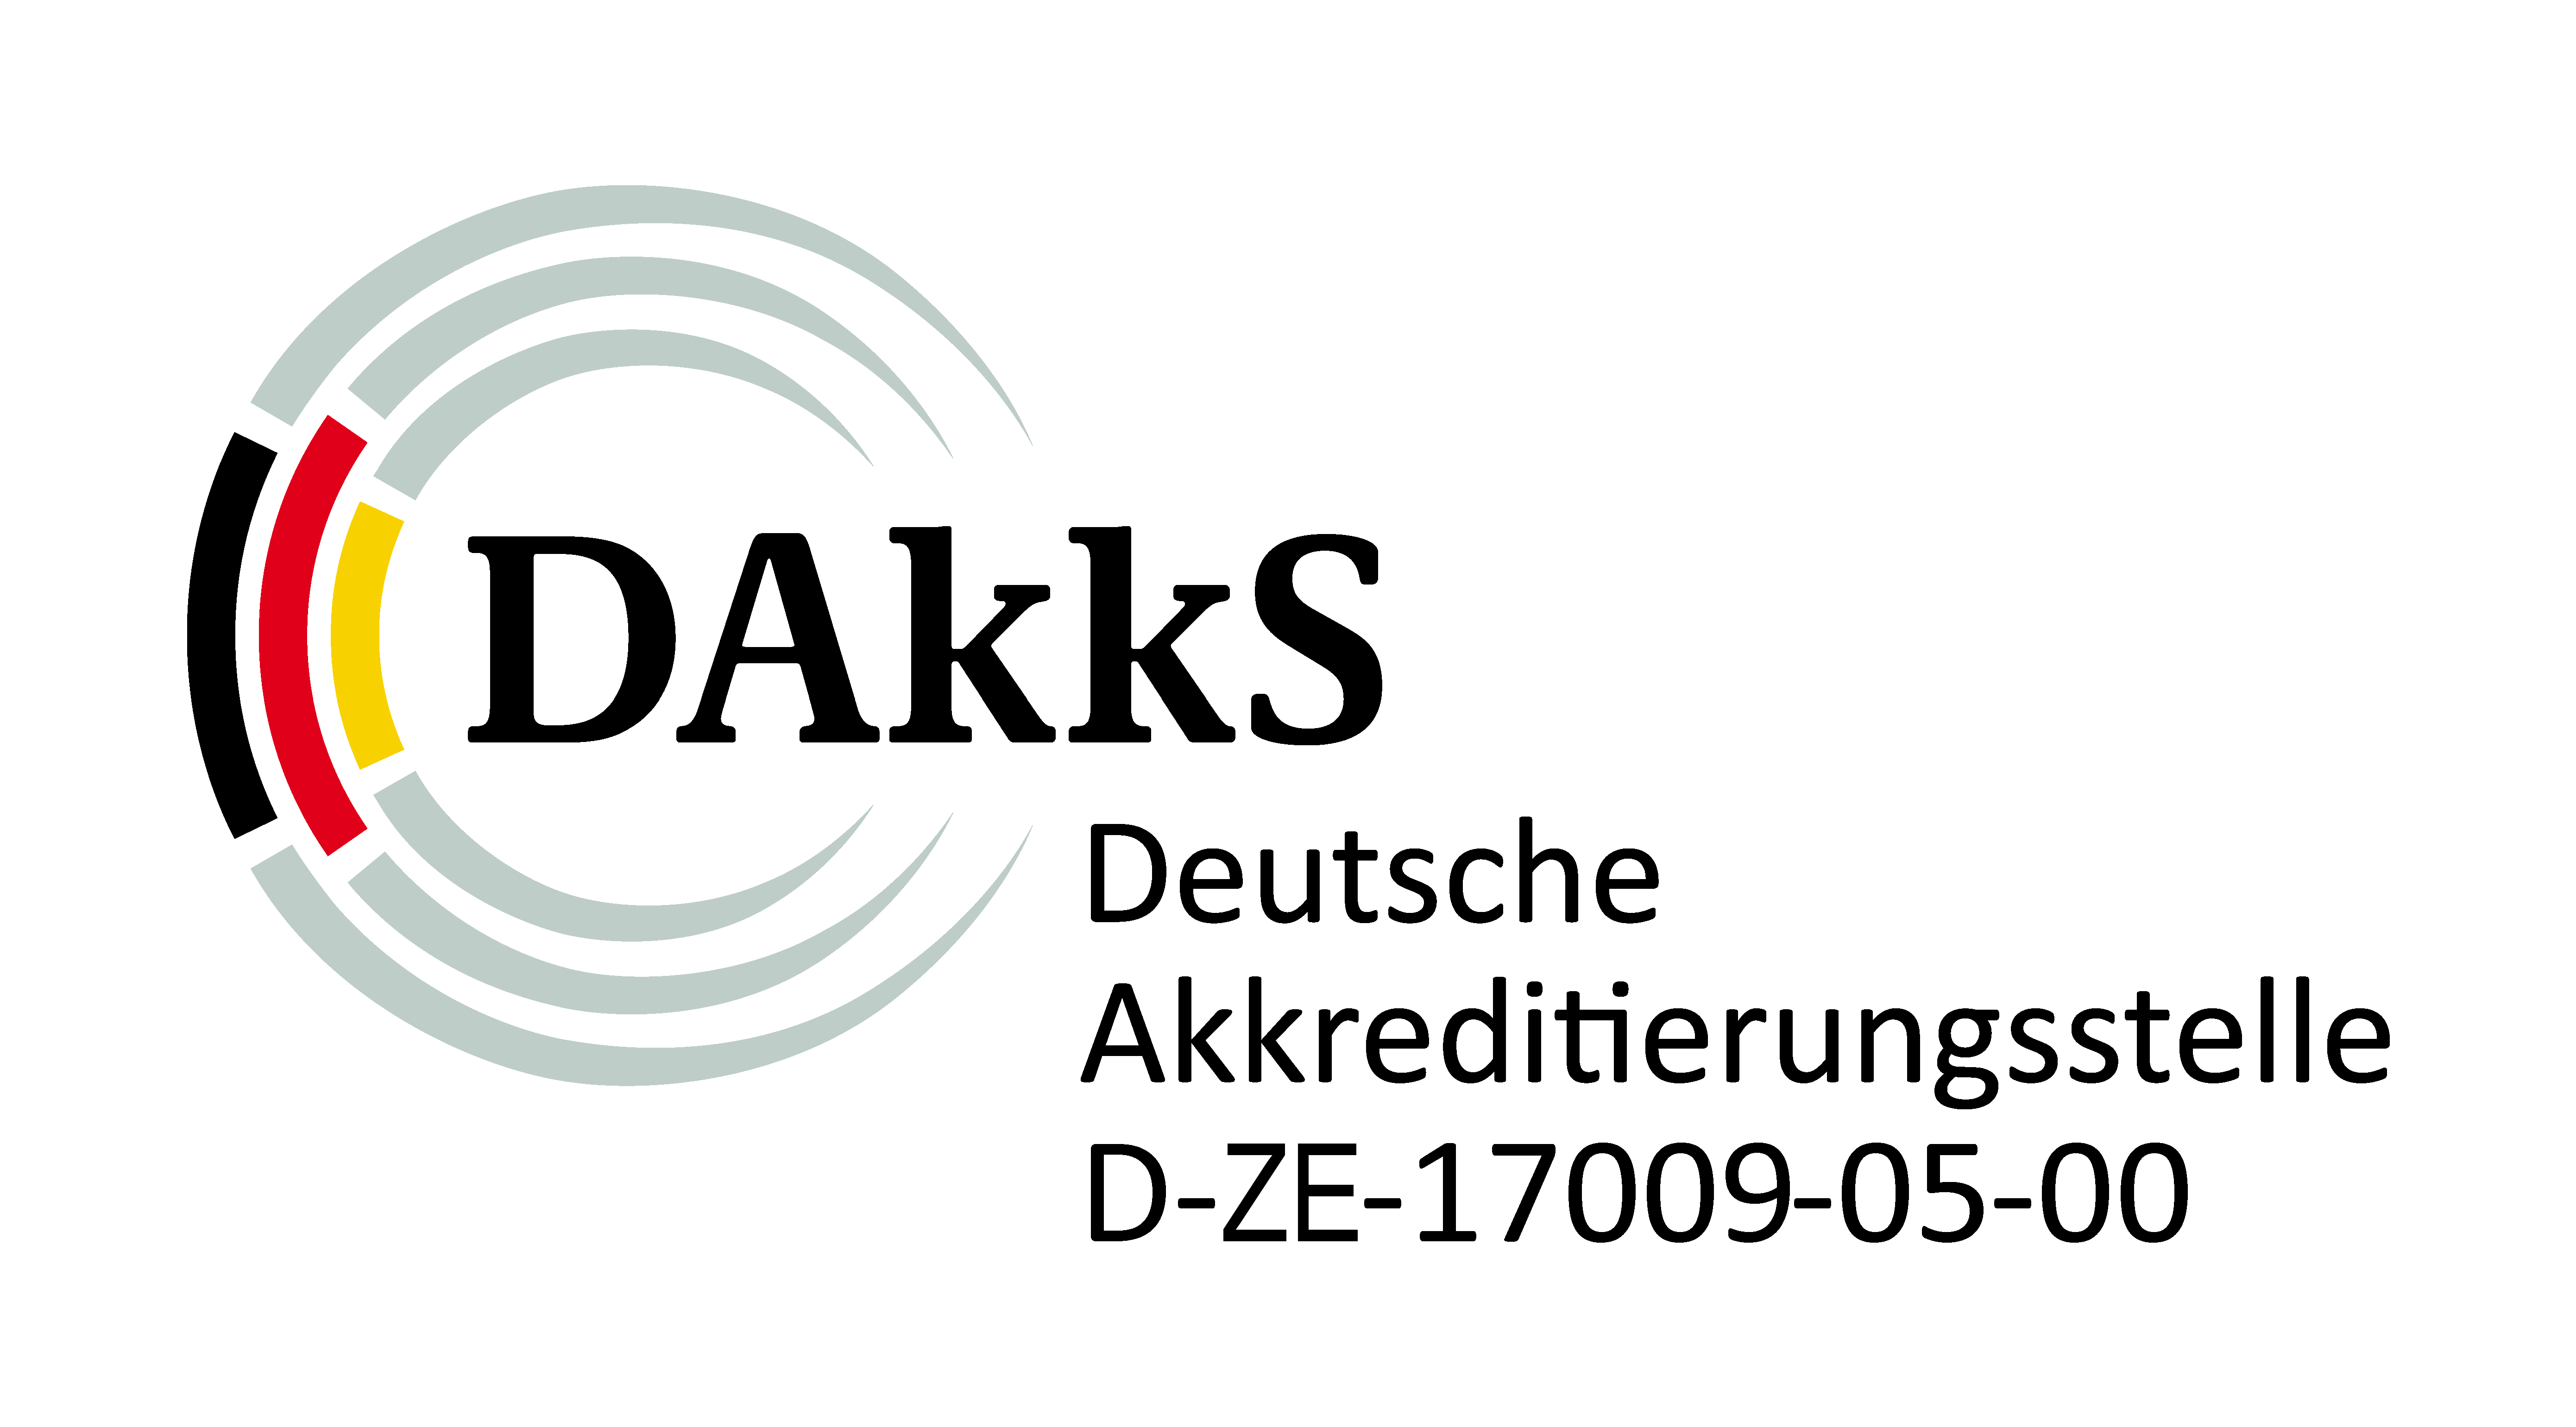 Logo Deutsche Akkreditierungsstelle GmbH ist für den Bereich Zertifizierung (erkennbar am ZE).